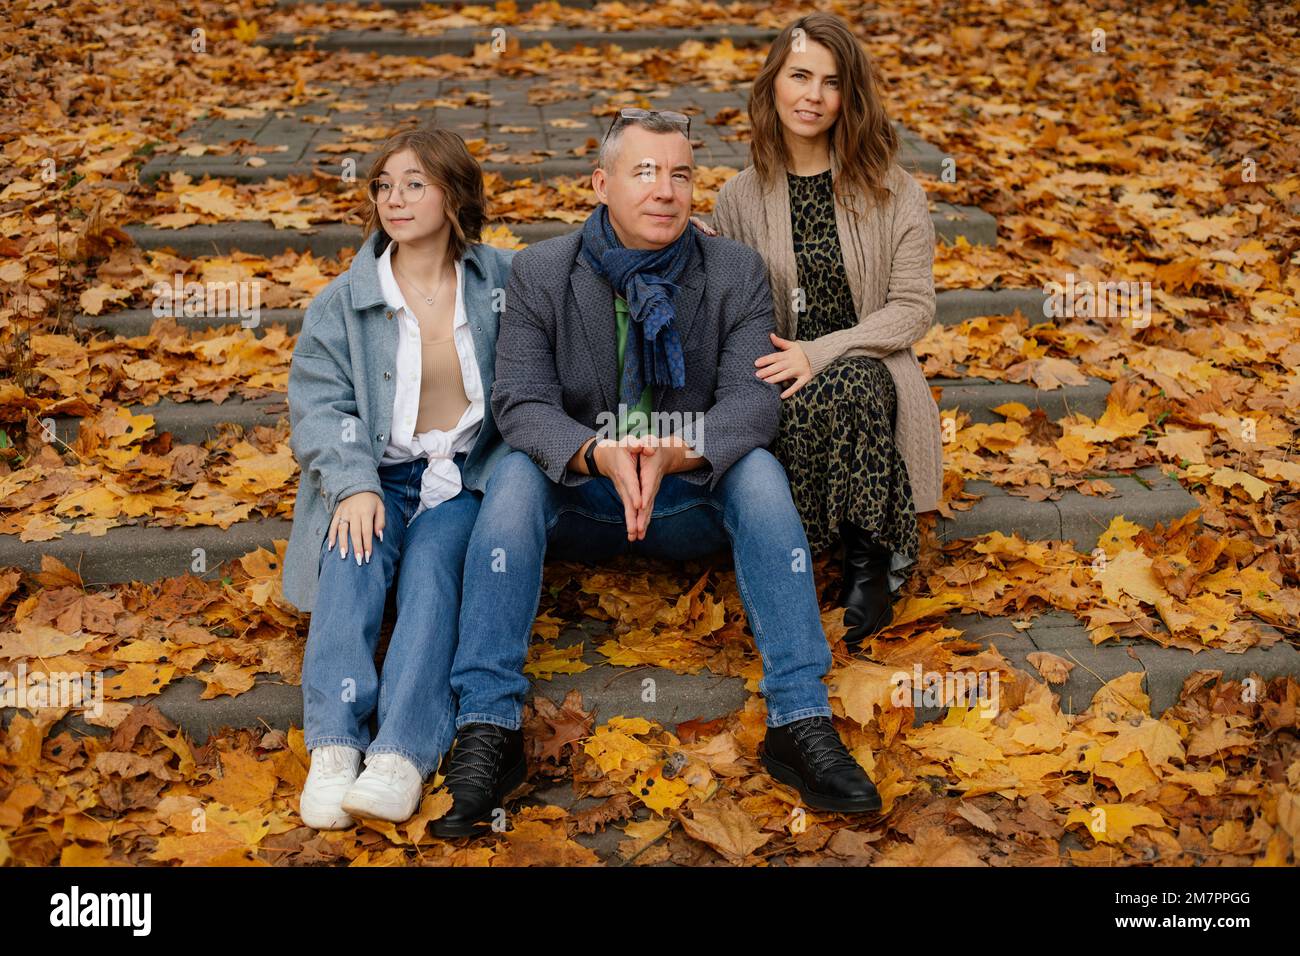 Une famille heureuse de trois personnes s'assoit dans un escalier recouvert de feuilles jaunes tombées. Les parents et les adolescents marchent dans le parc d'automne. Banque D'Images